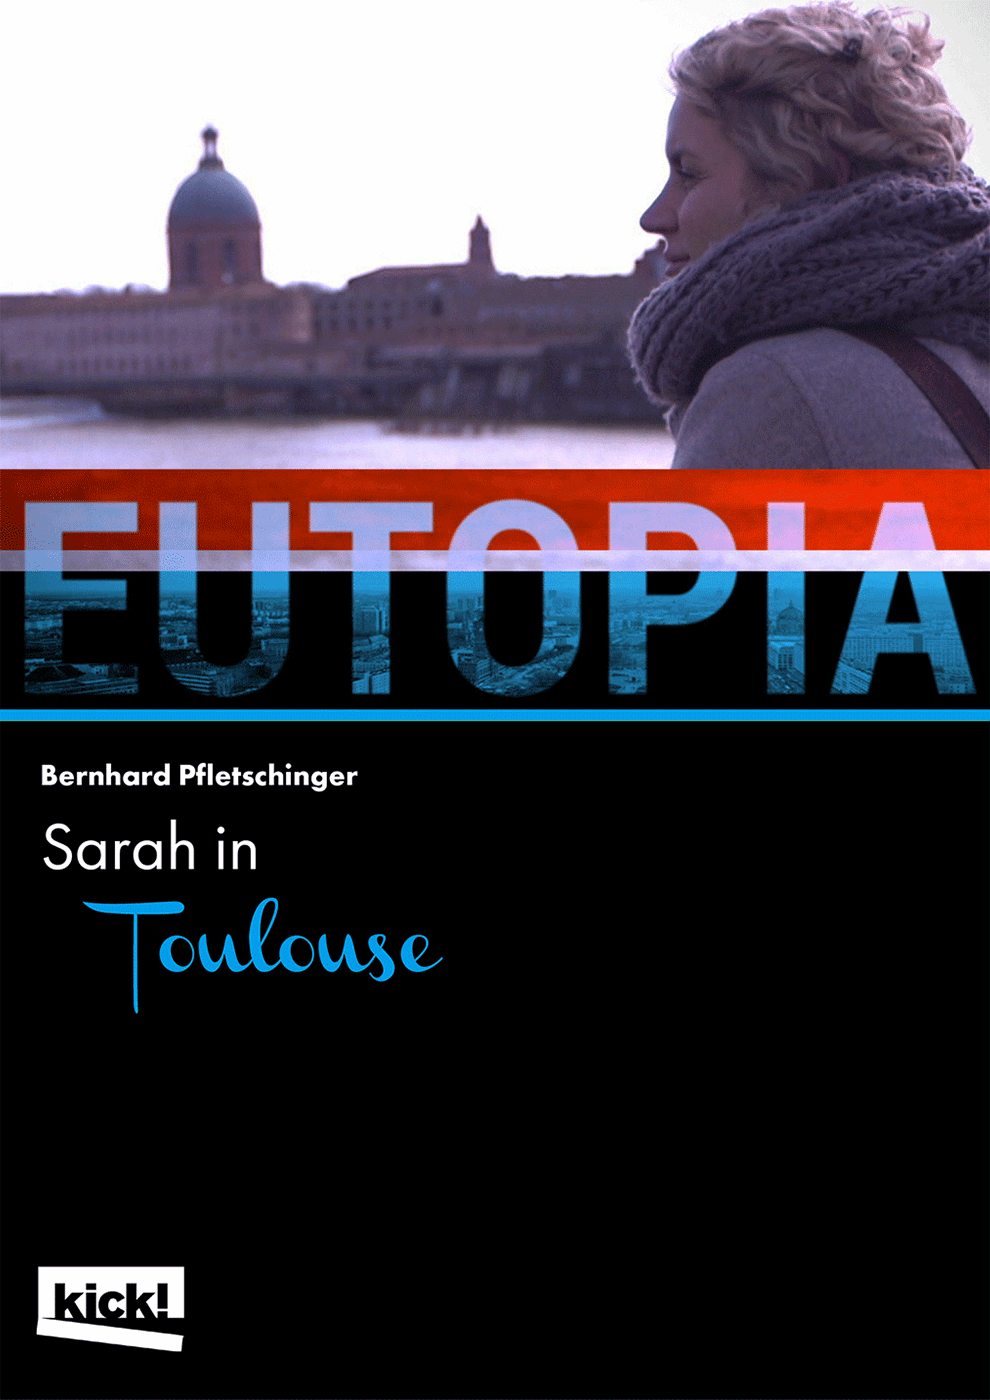 EUTOPIA - Sarah in Toulouse Ein Film von Nicole Leghissa